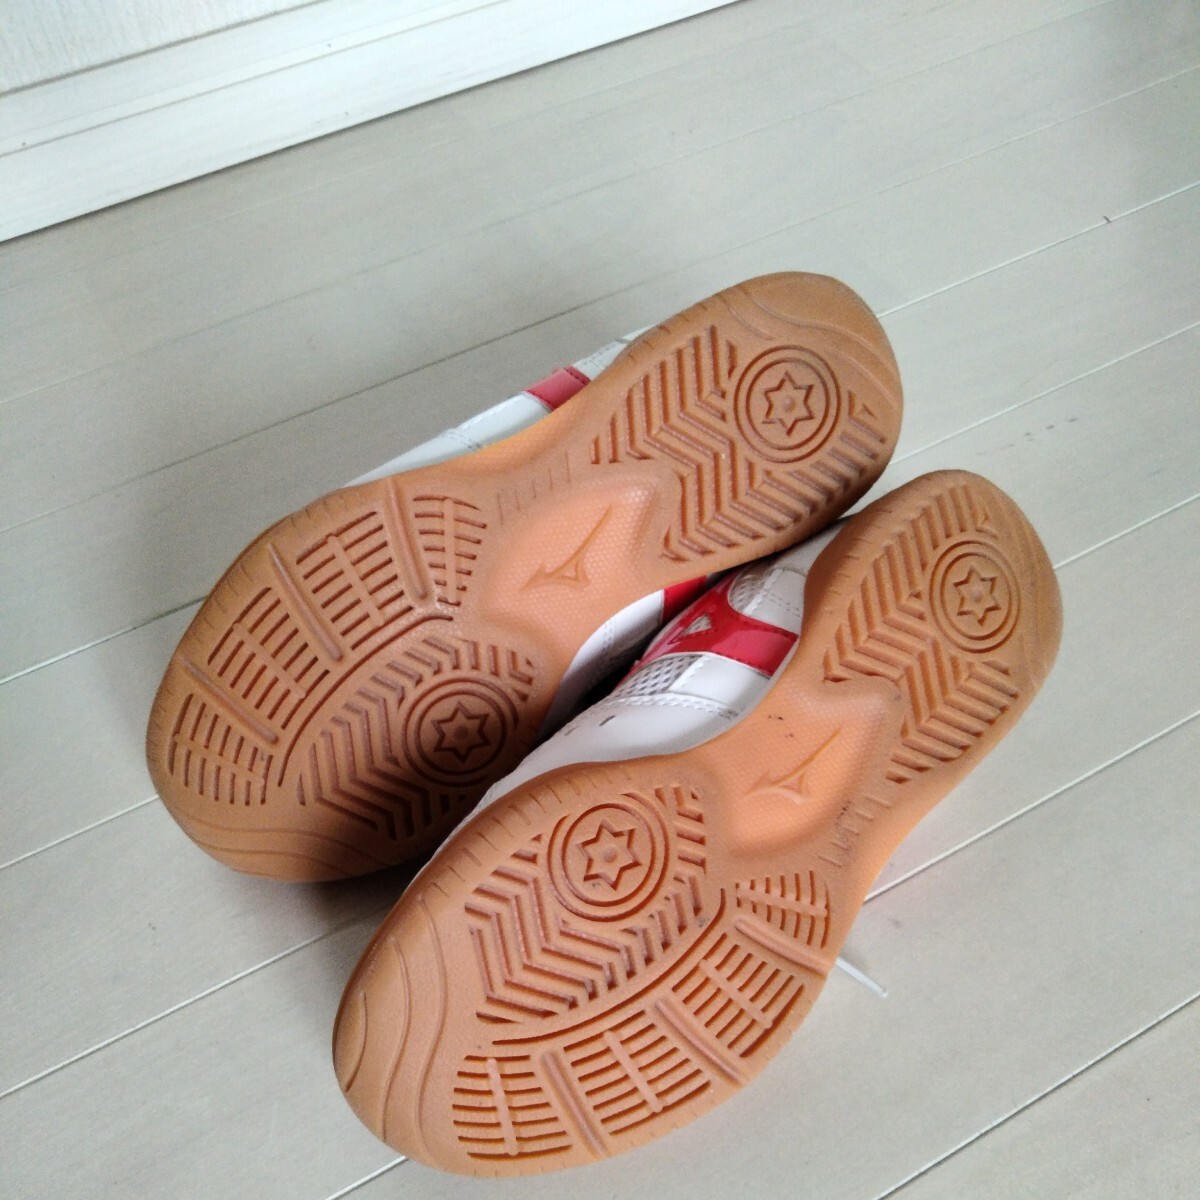  быстрое решение 2980 иен * средняя школа указание * женщина . физическая подготовка павильон обувь 24 см Mizuno MIZUNO б/у сменная обувь школьные туфли сверху обувь спортивные туфли купон использование .